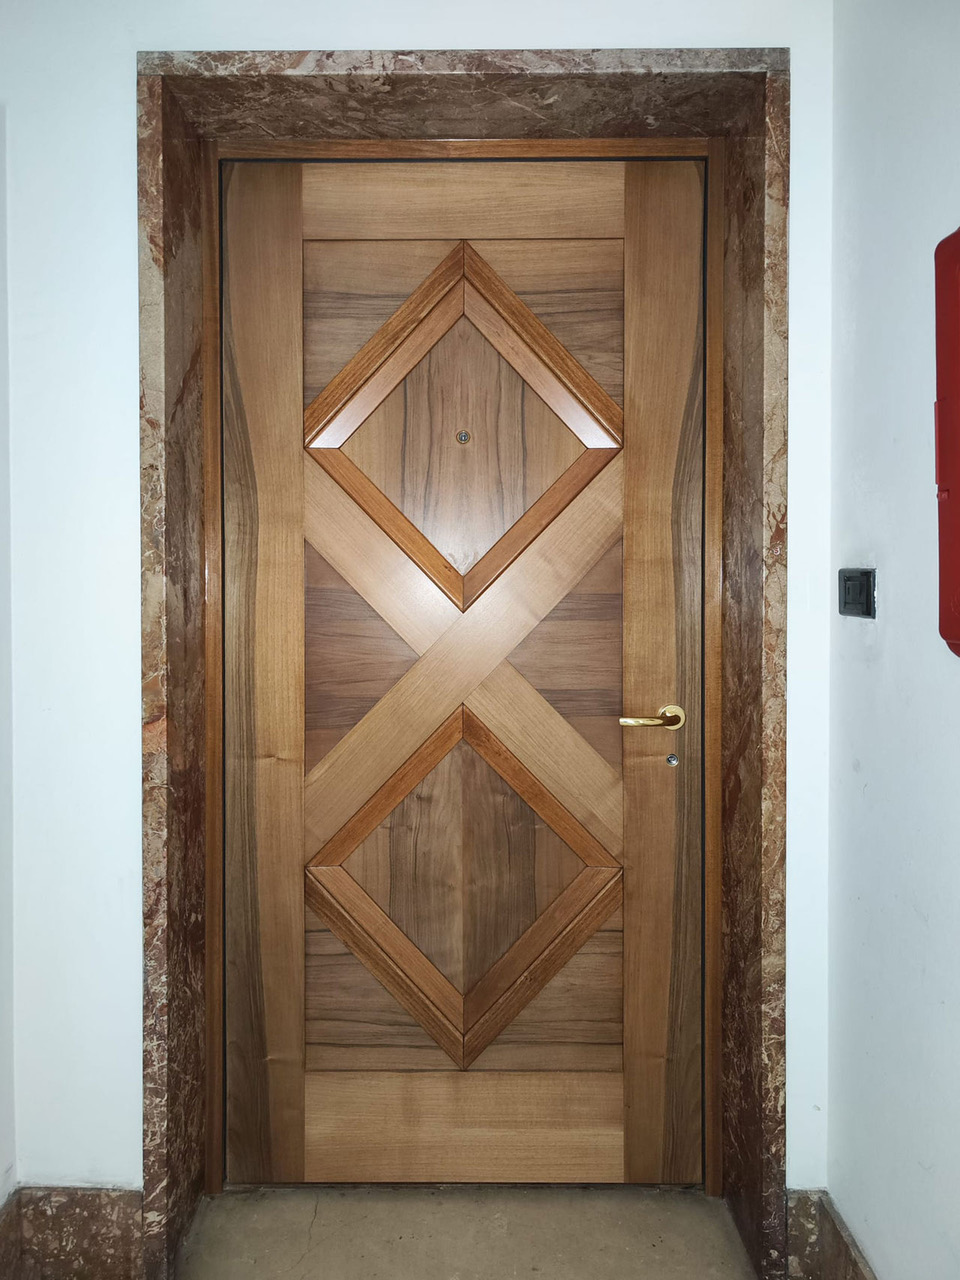 Porte blindate sicure: quale scegliere tra le migliori porta blindata in legno 2